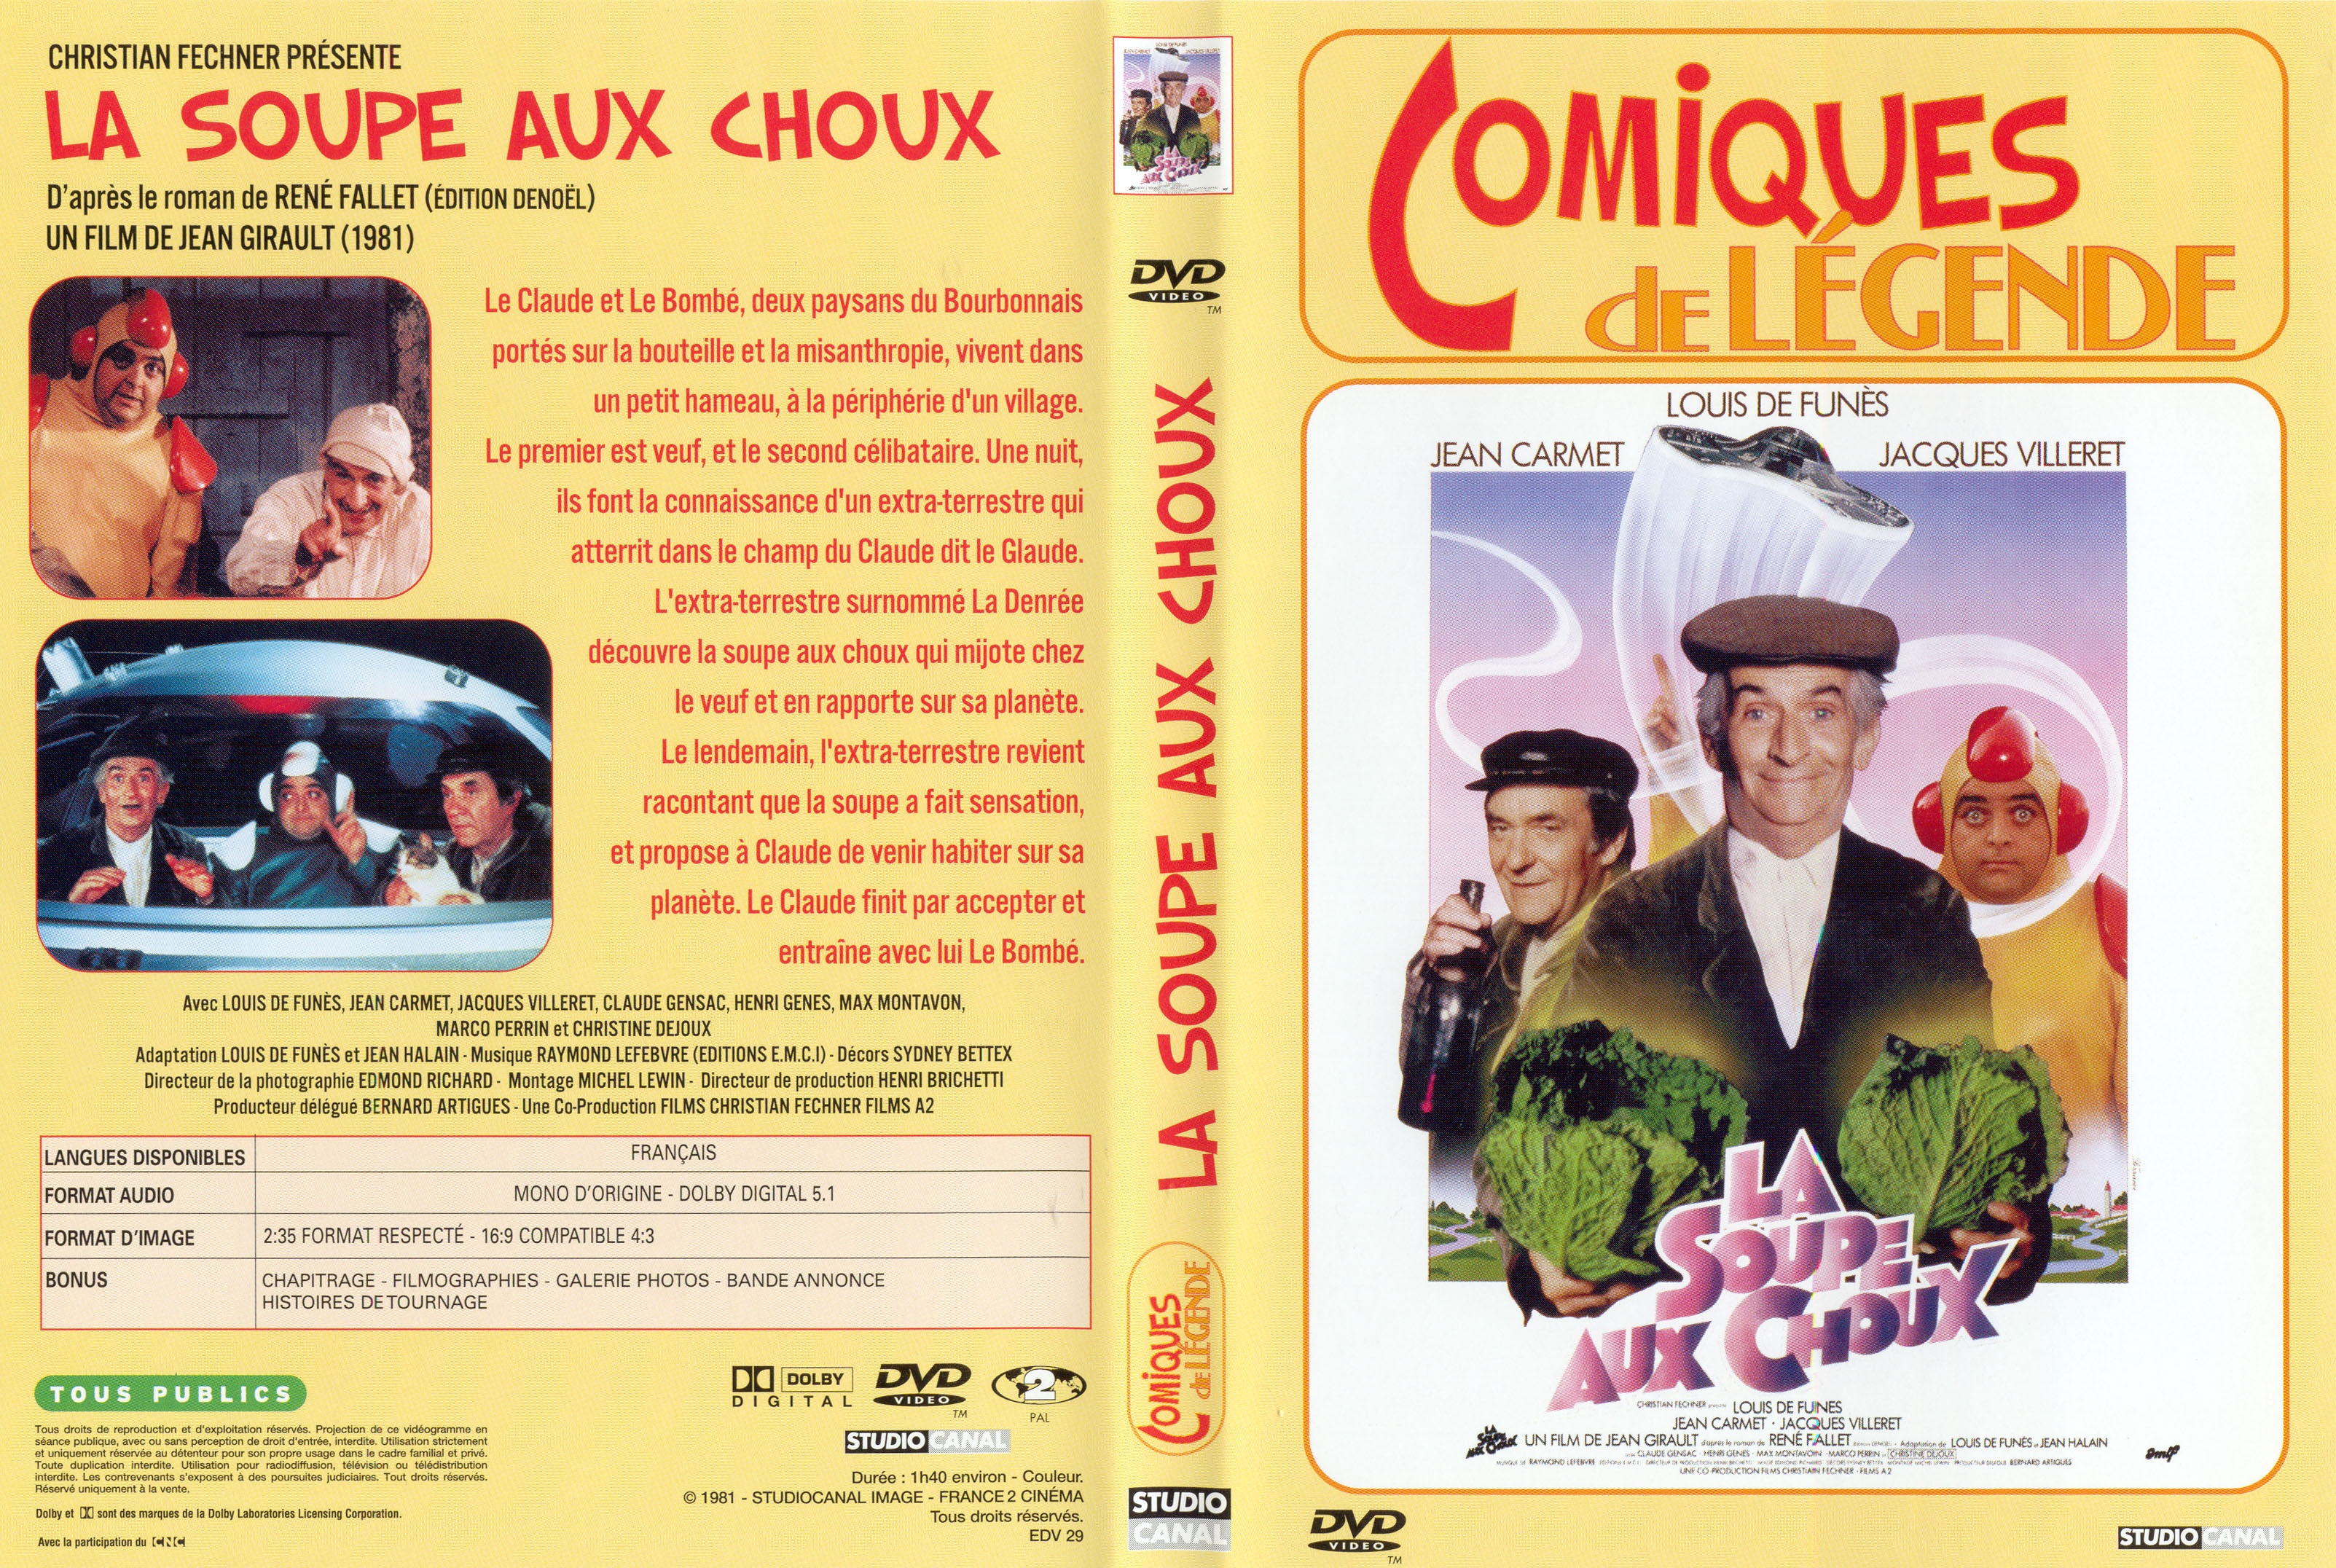 Jaquette DVD La soupe aux choux v2